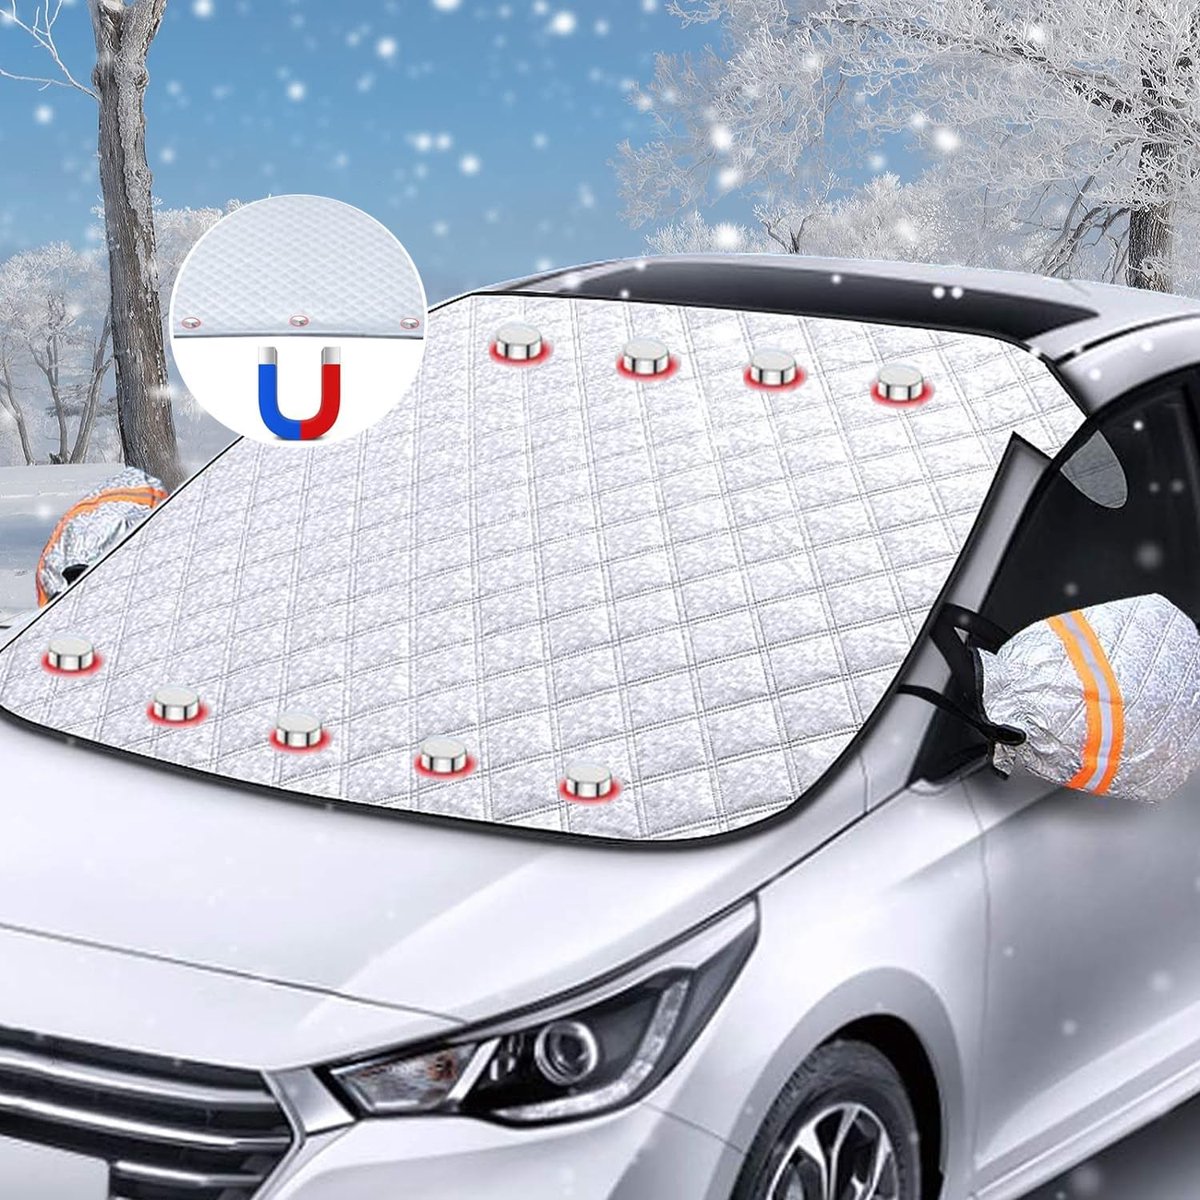 Zonwering auto voorruit, voorruitafdekking, met 9 magneten voorruitafdekking auto voorruit afdekking zonneklep winter tegen sneeuw